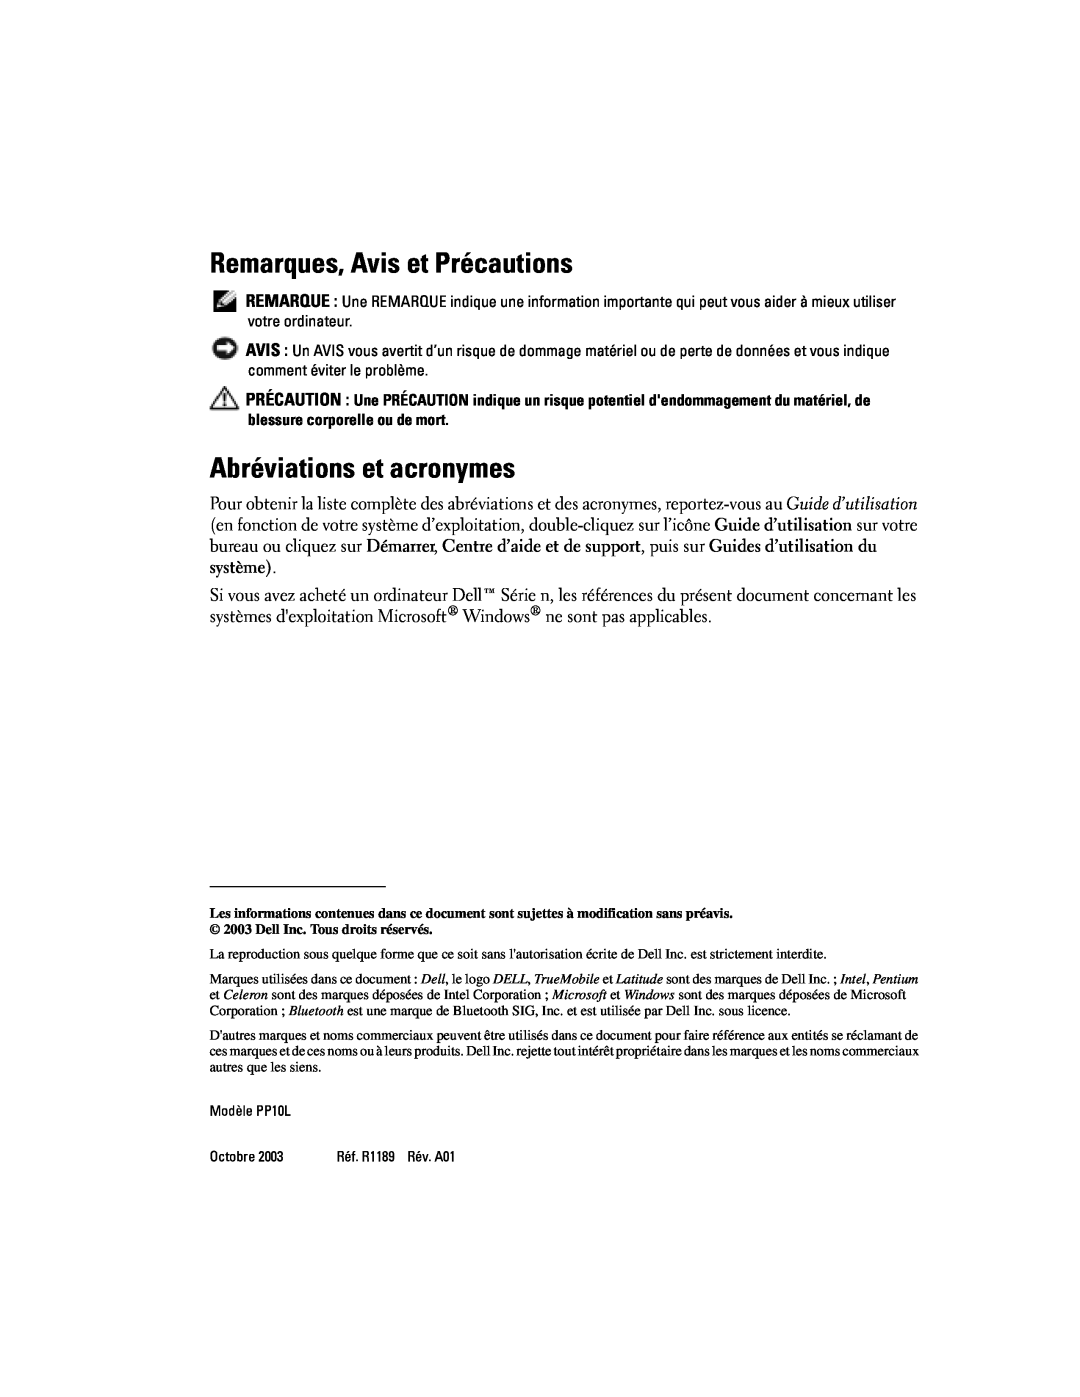 Dell D505 manual Remarques, Avis et Précautions, Abréviations et acronymes, Modèle PP10L, Octobre 